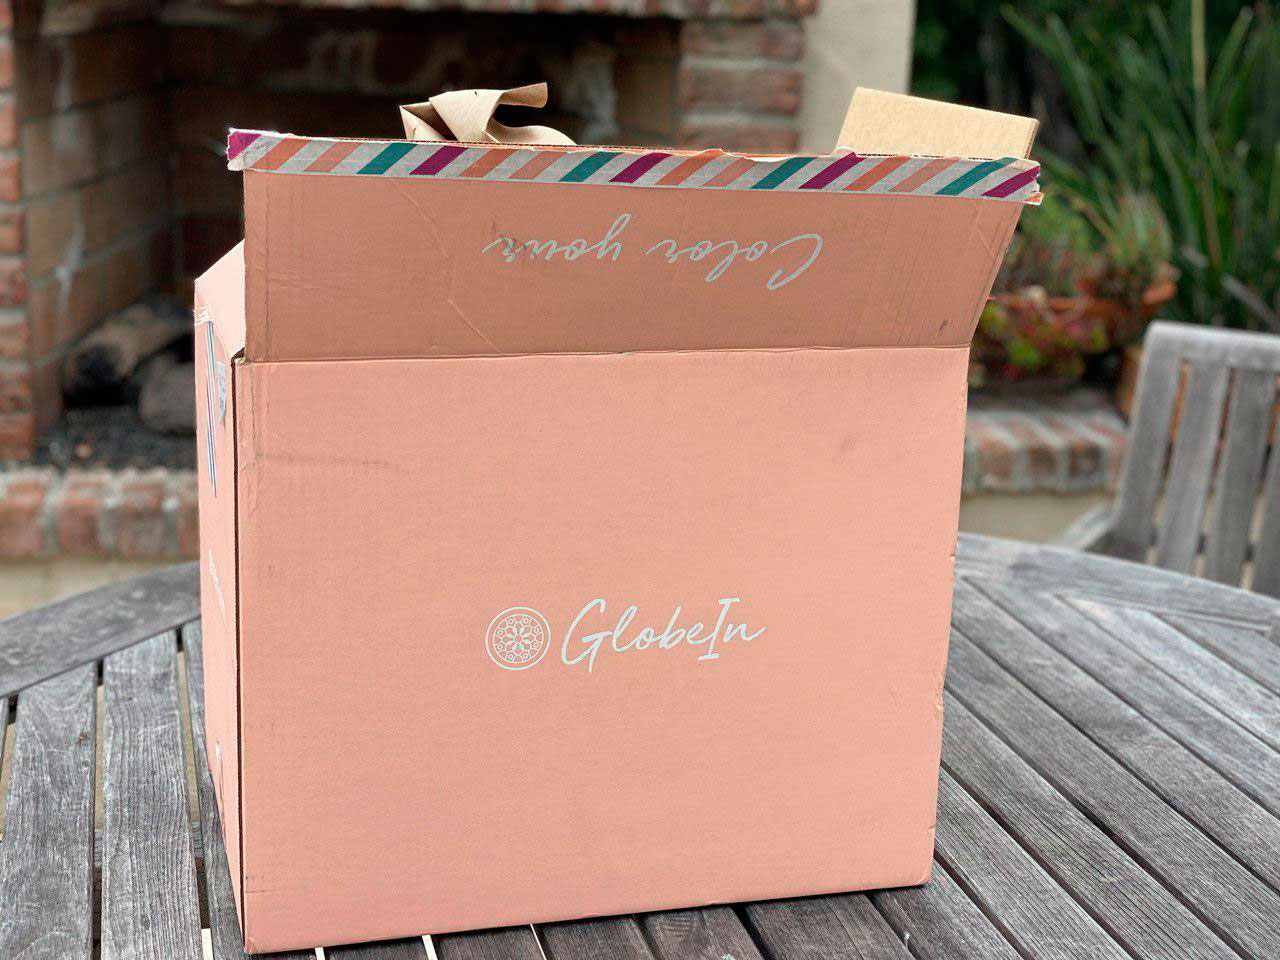 GlobeIn Glam Box Promo 20off